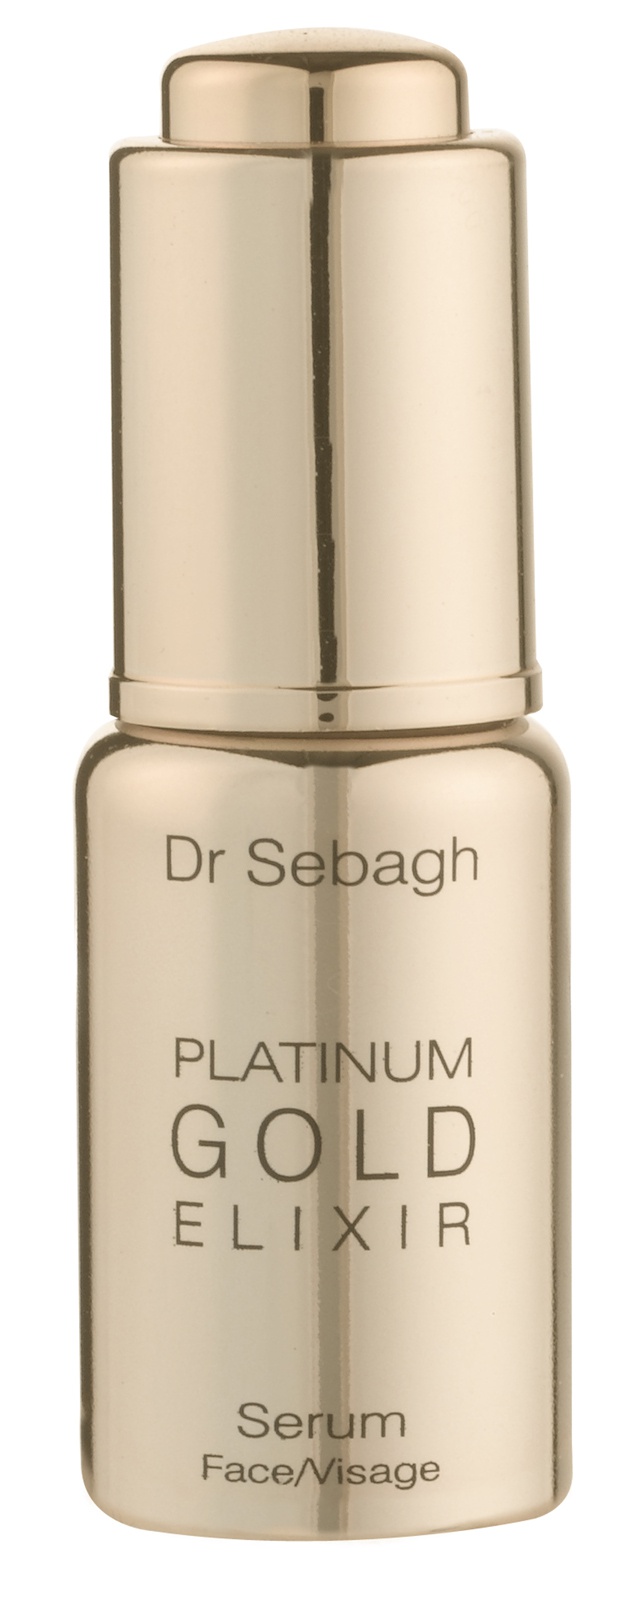 Dr Sebagh Platinum Gold Elixir